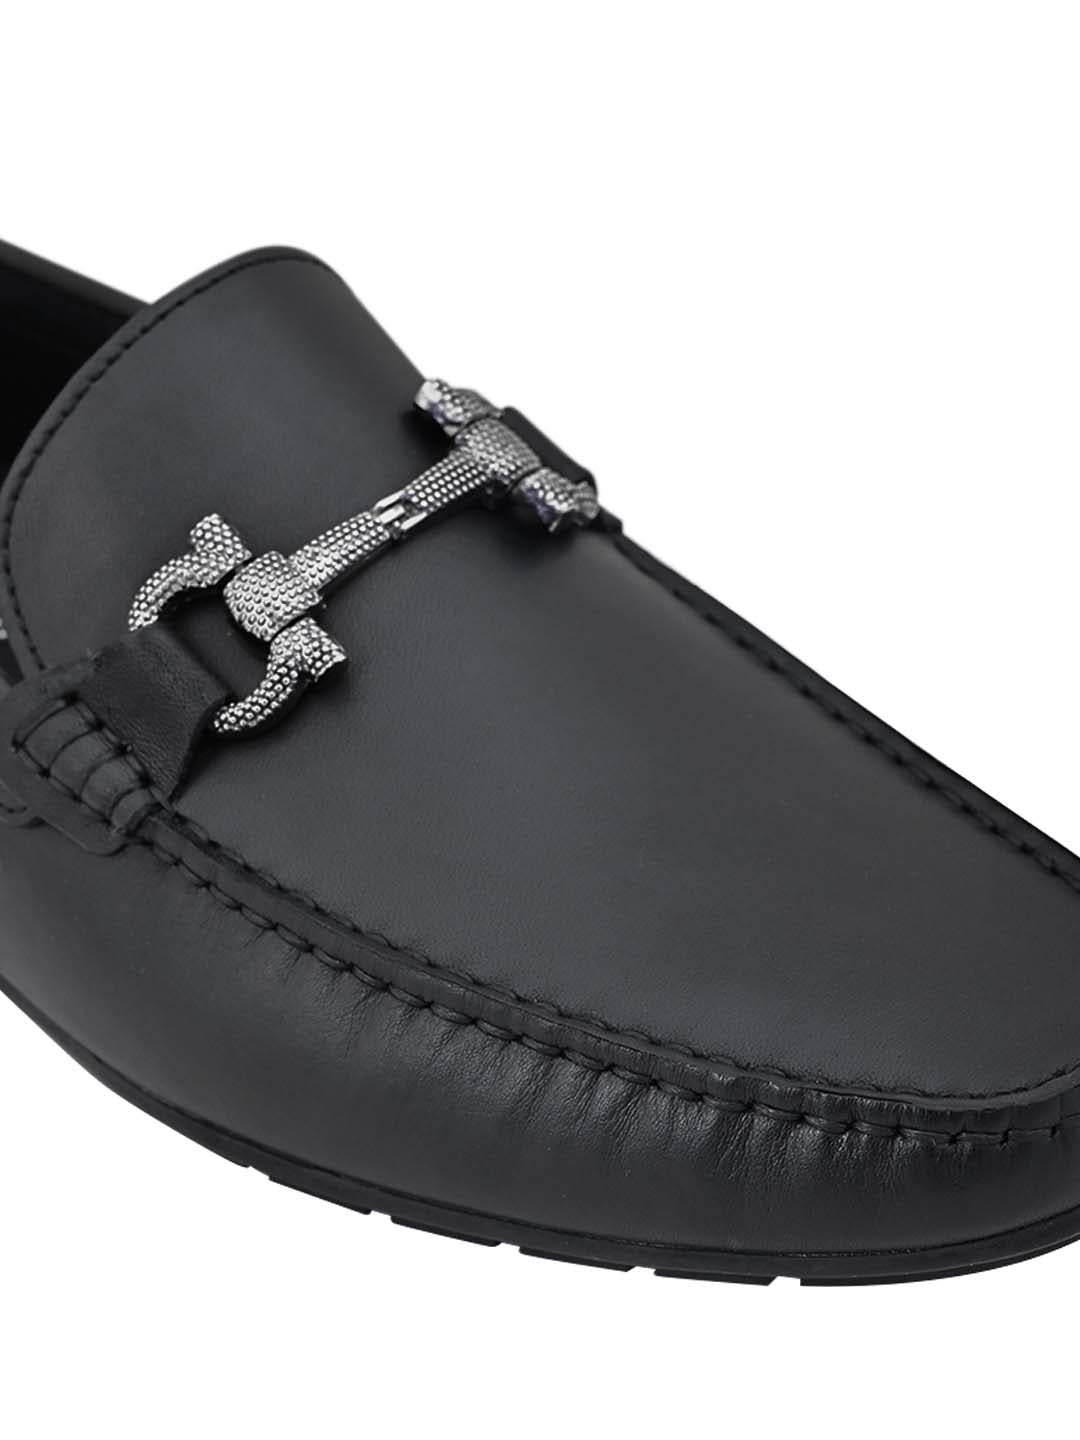 Men Footwear, Black Loafers, Footwear